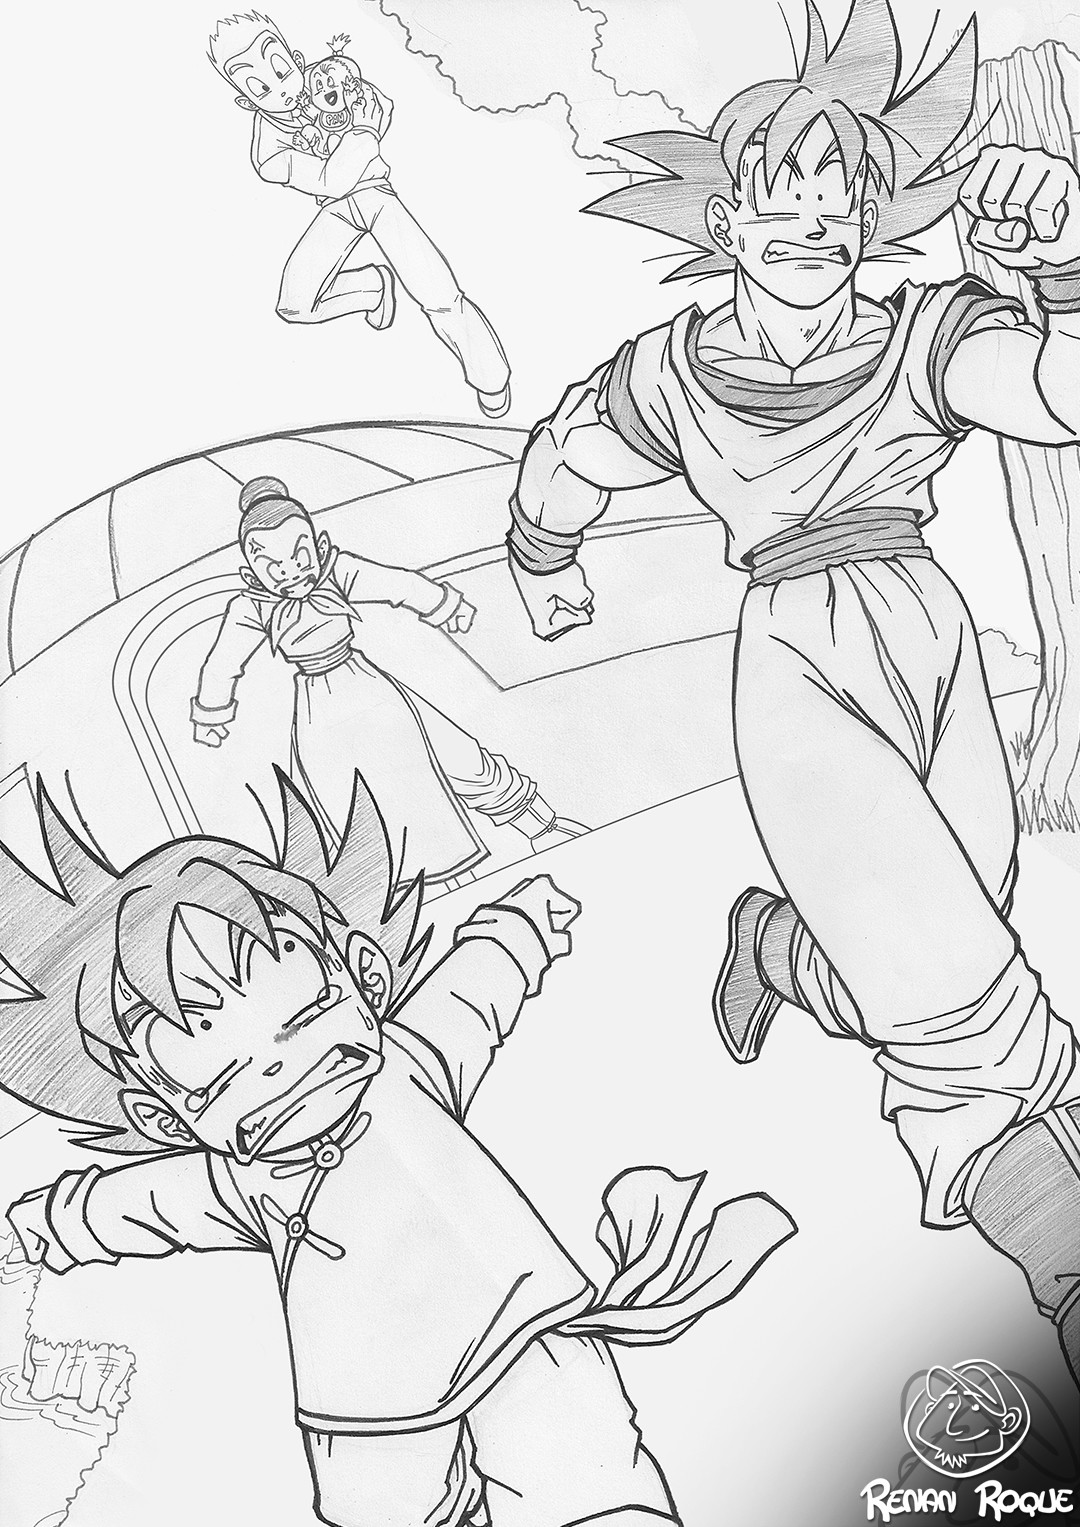 Renan Roque - Família Goku /Goku's Family